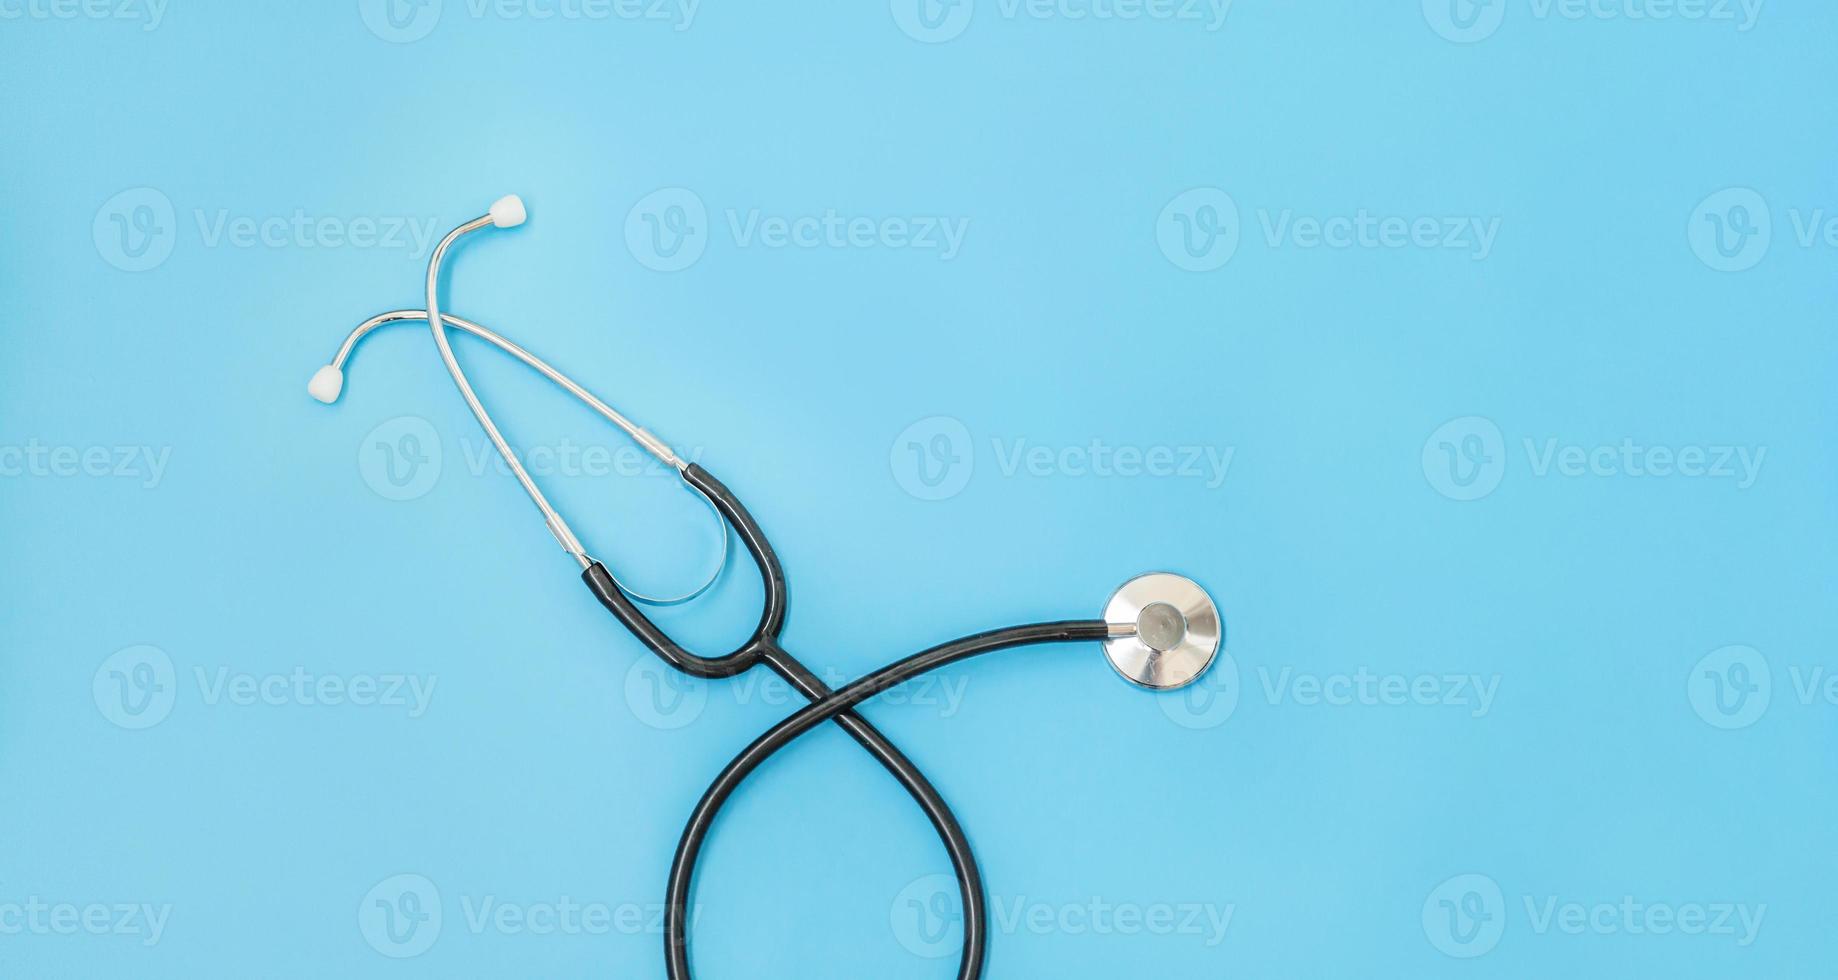 medicin utrustning stetoskop eller phonendoscope isolerad på trendiga pastellblå bakgrund. instrumentanordning för läkare. hälsovård livförsäkring koncept banner foto